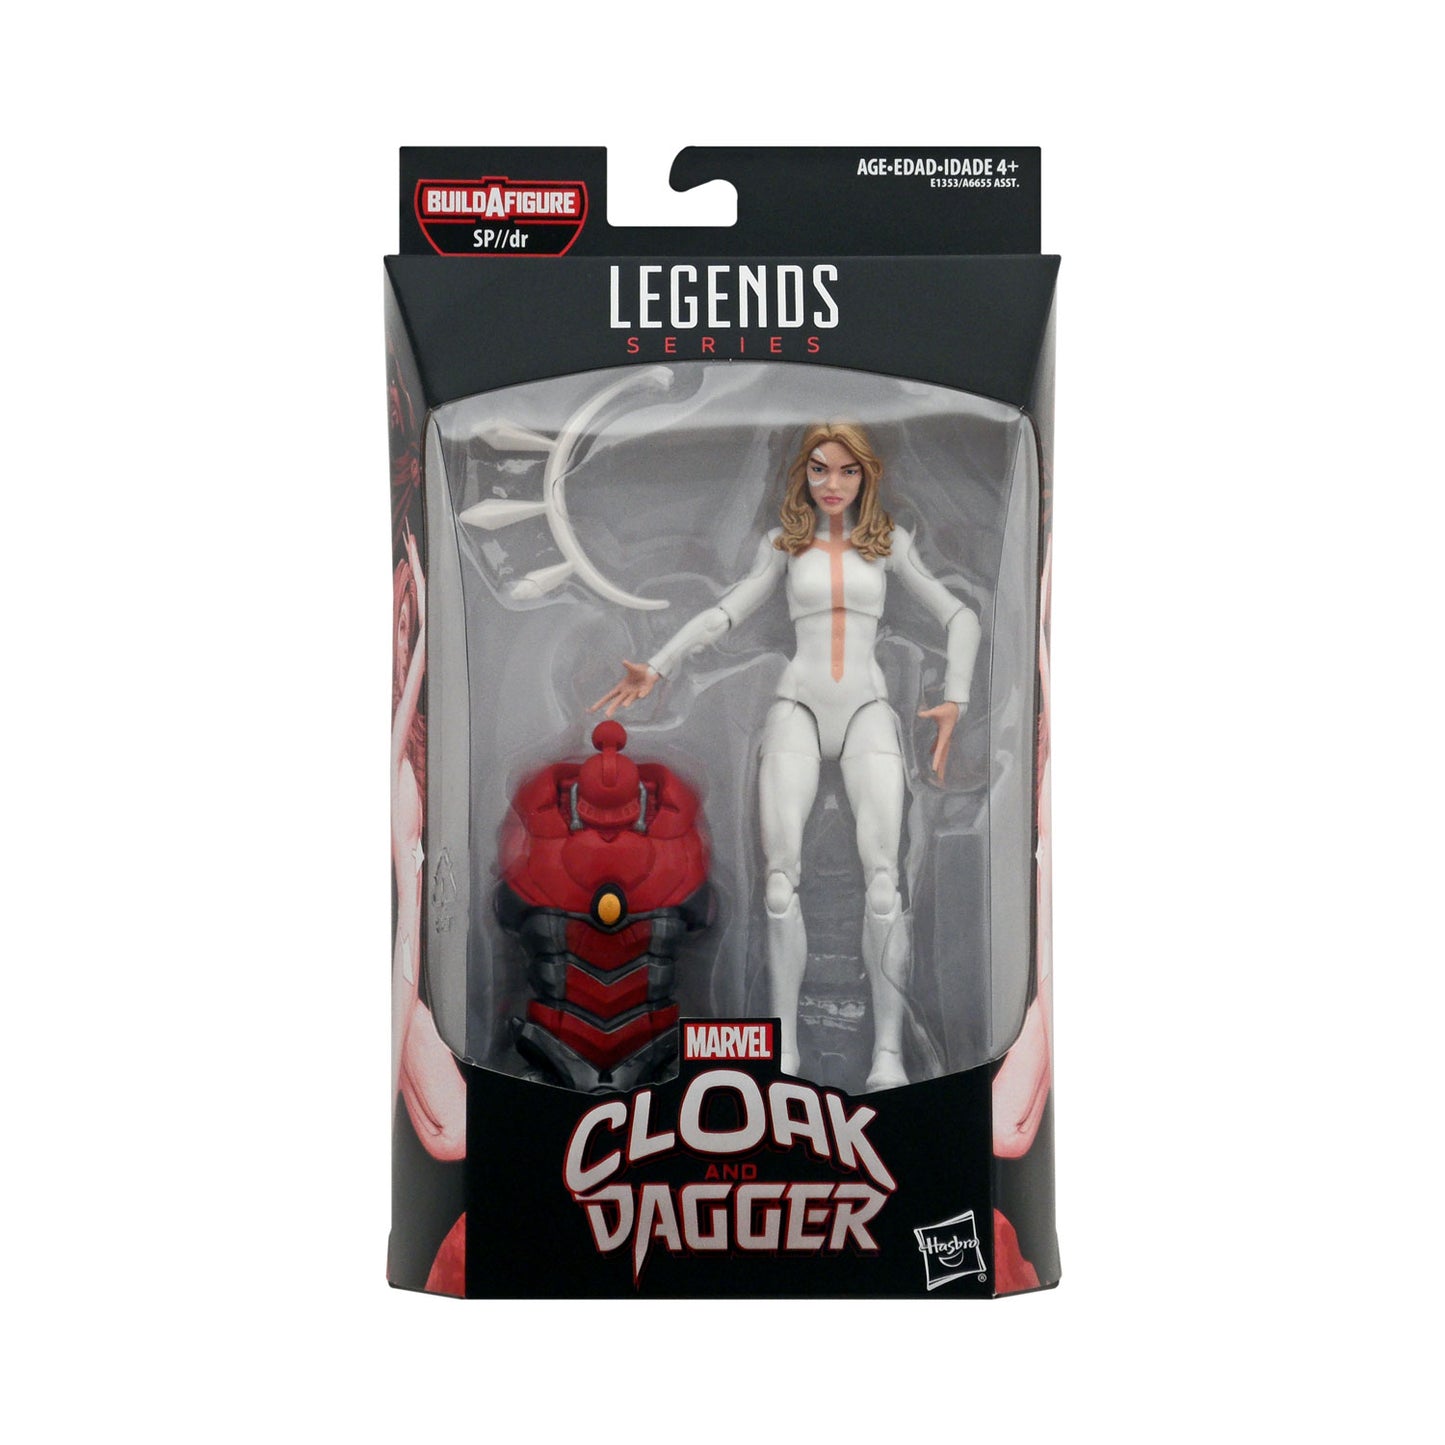 Marvel Legends SP//dr Series Dagger 6-Inch Action Figure